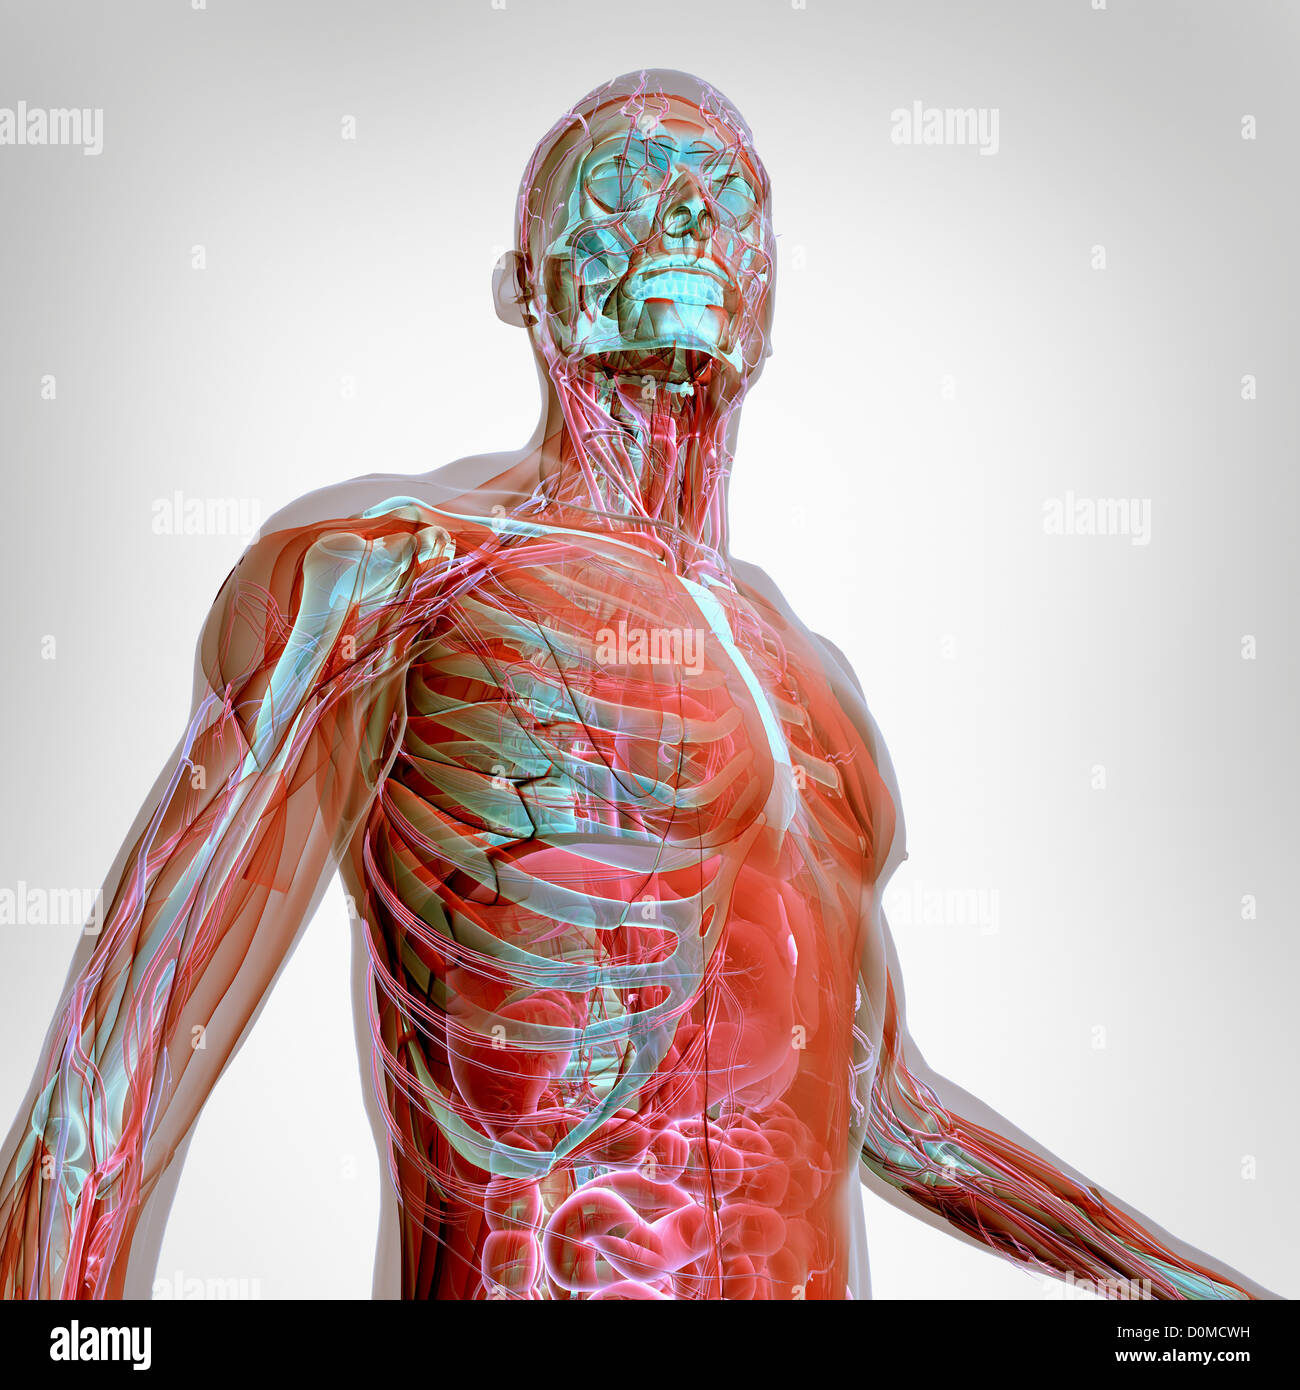 Un modèle humain montrant l'anatomie interne. Banque D'Images